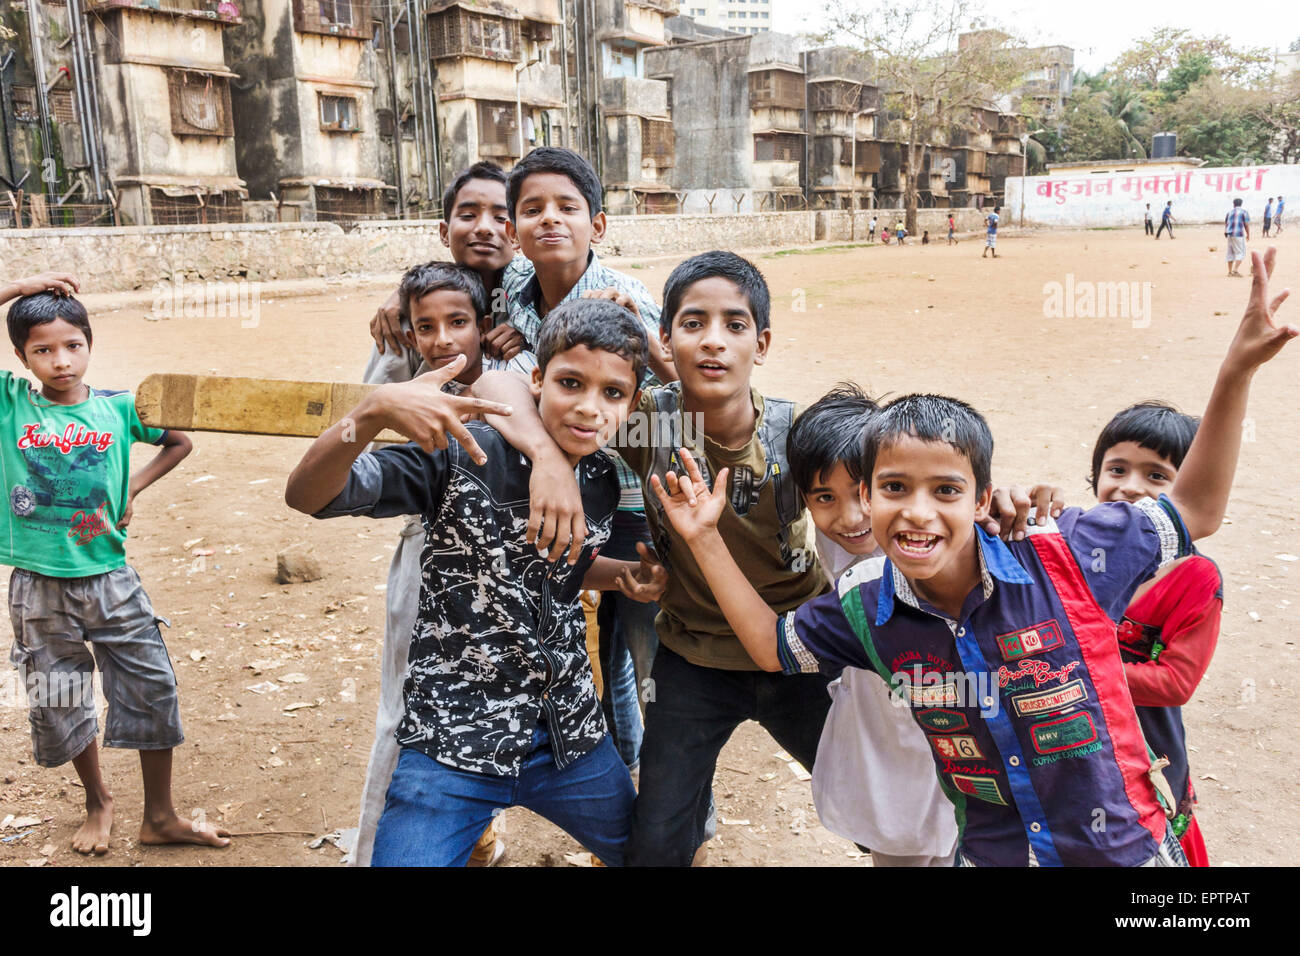 Mumbai Indien, Dharavi, Shahu Nagar Road, Slum, Dirt Lot, Cricket Feld Pitch, männliche Jungen Kinder Kinder Freunde, spielen, bat, Hand Signale, India150228035 Stockfoto